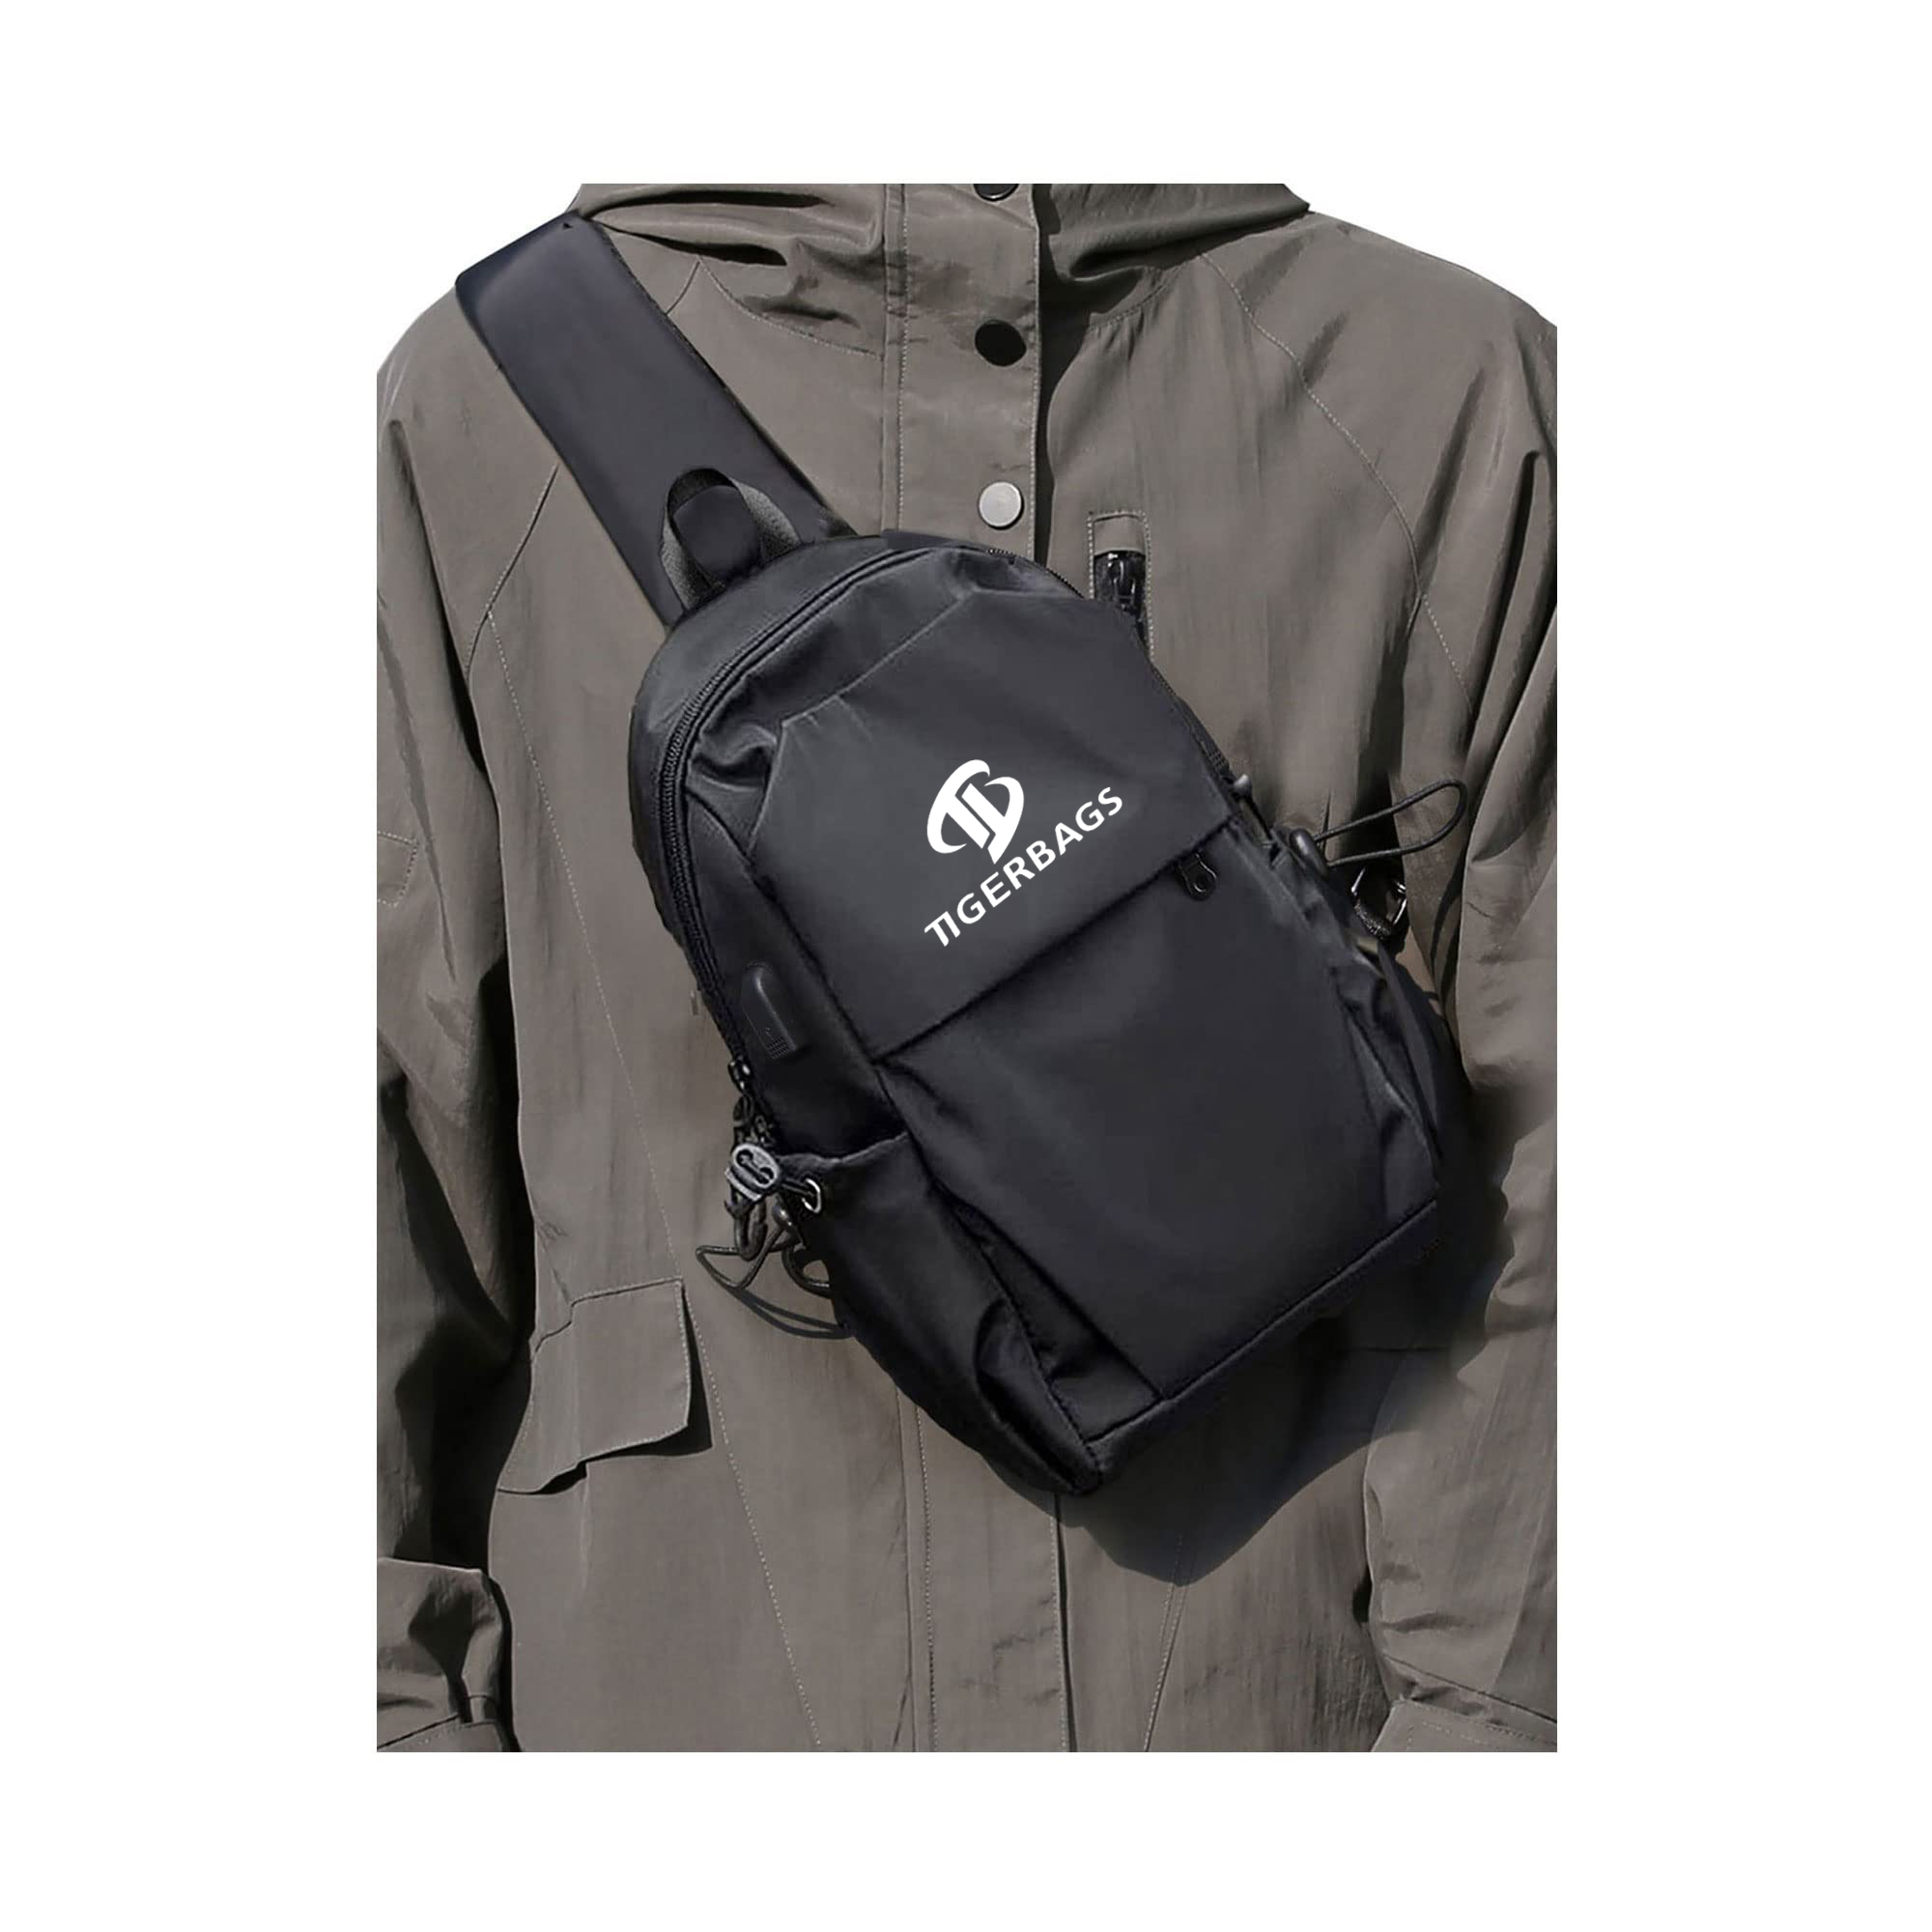 Popular Design for Batman Backpack - Crossbody bag for men and women shoulder bag USB charger chest bag – TIGER